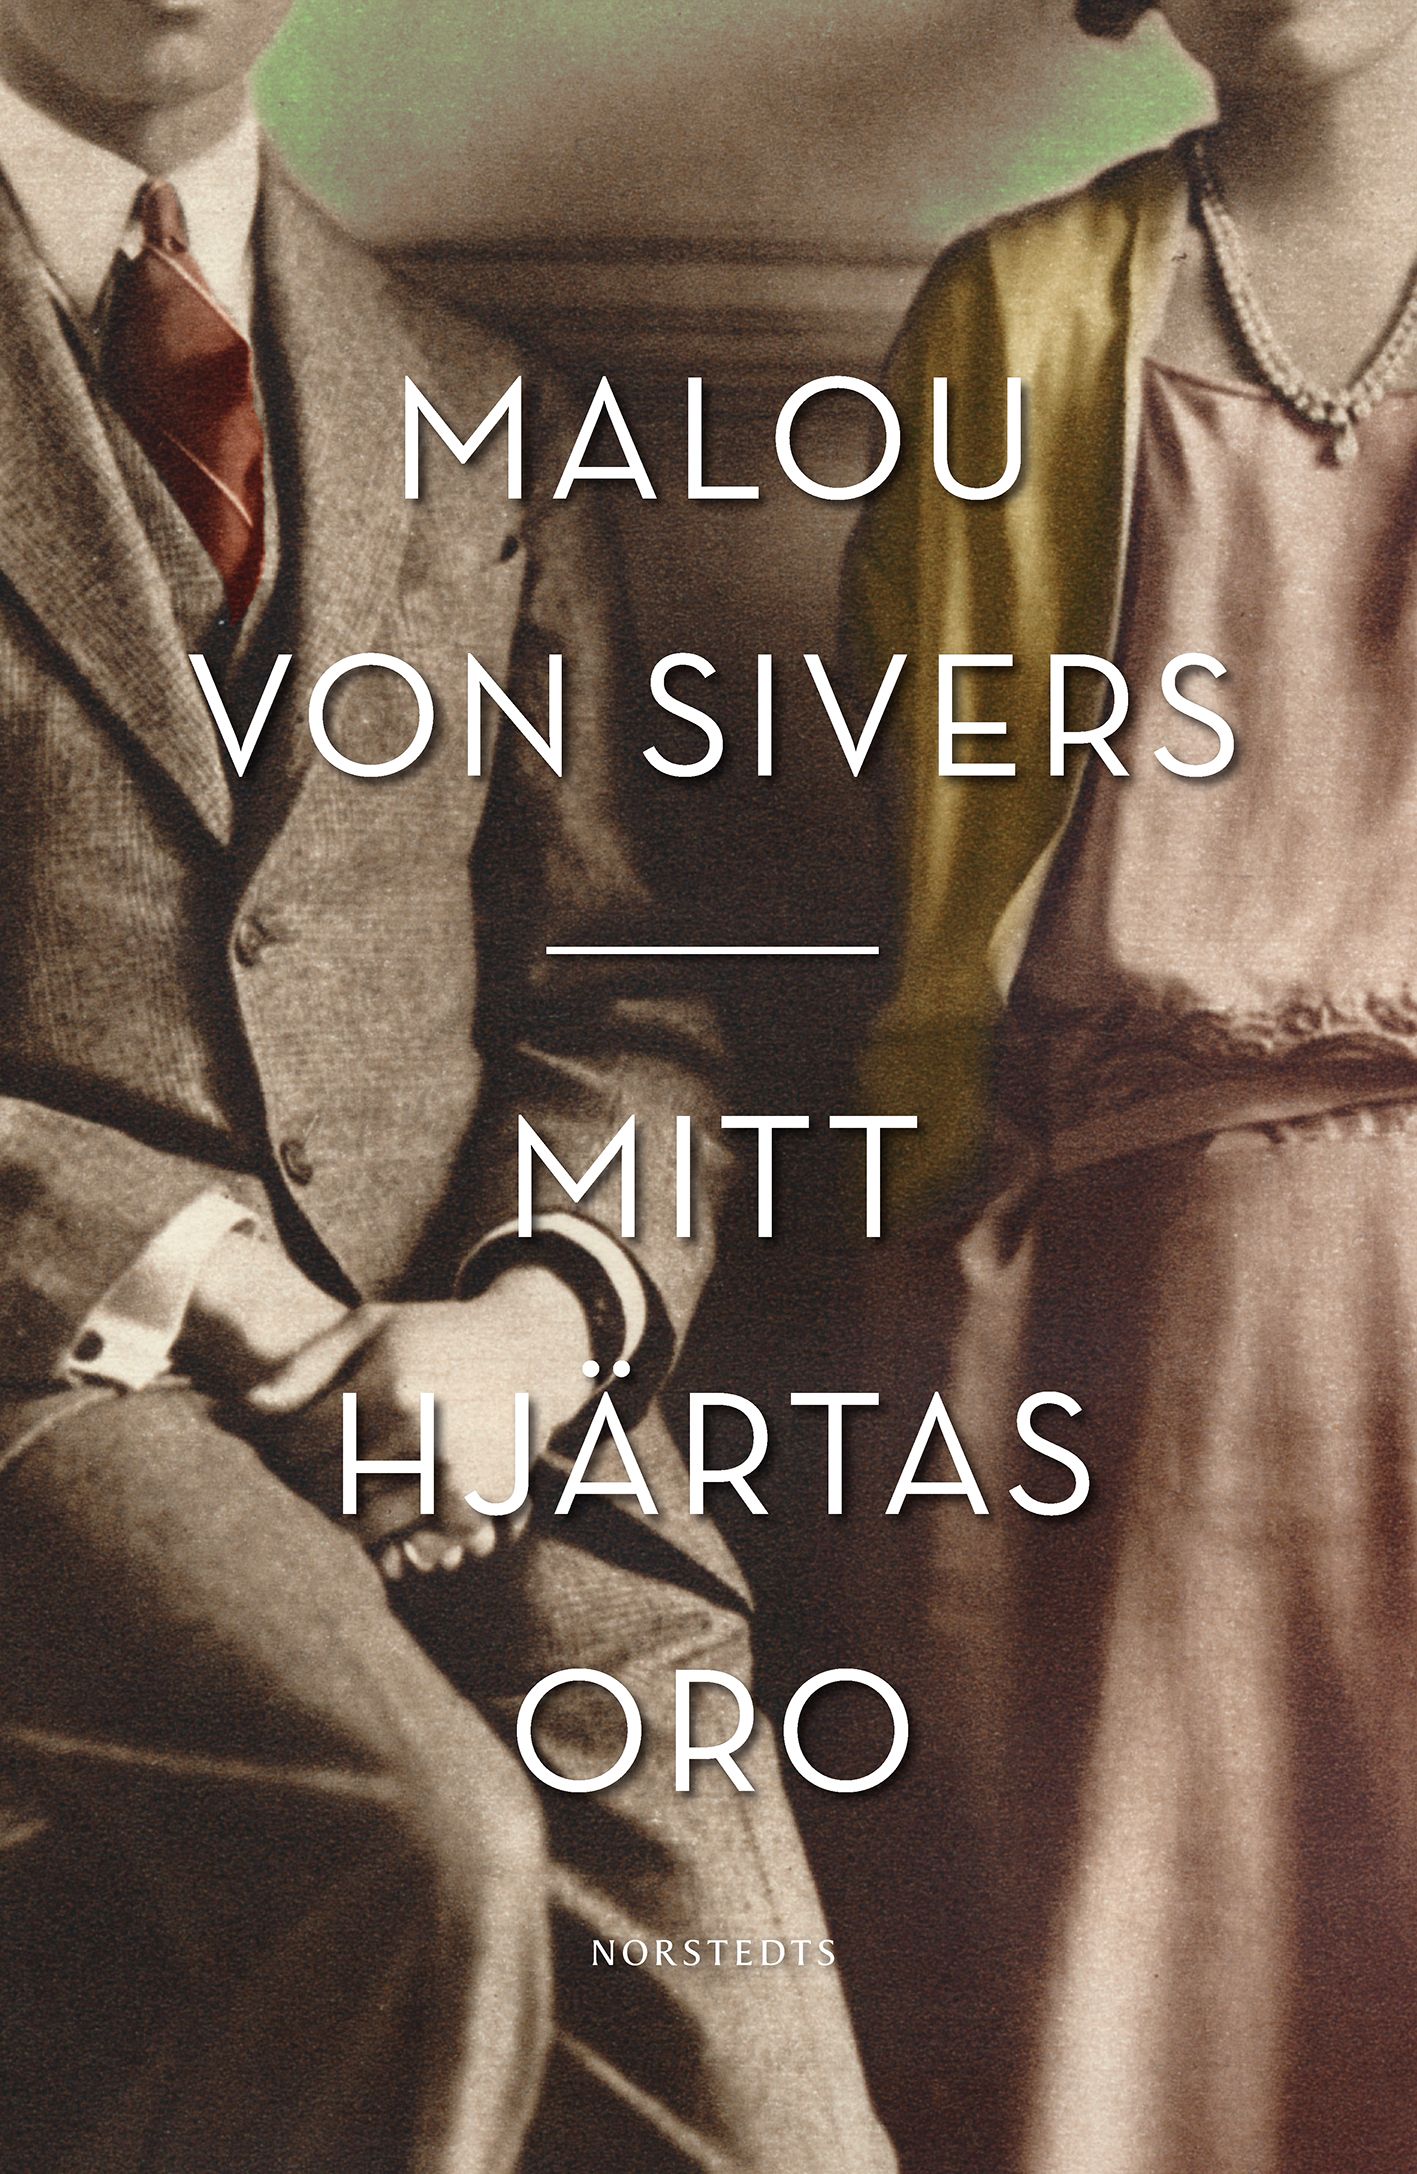 Mitt hjärtas oro, eBook by Malou von Sivers